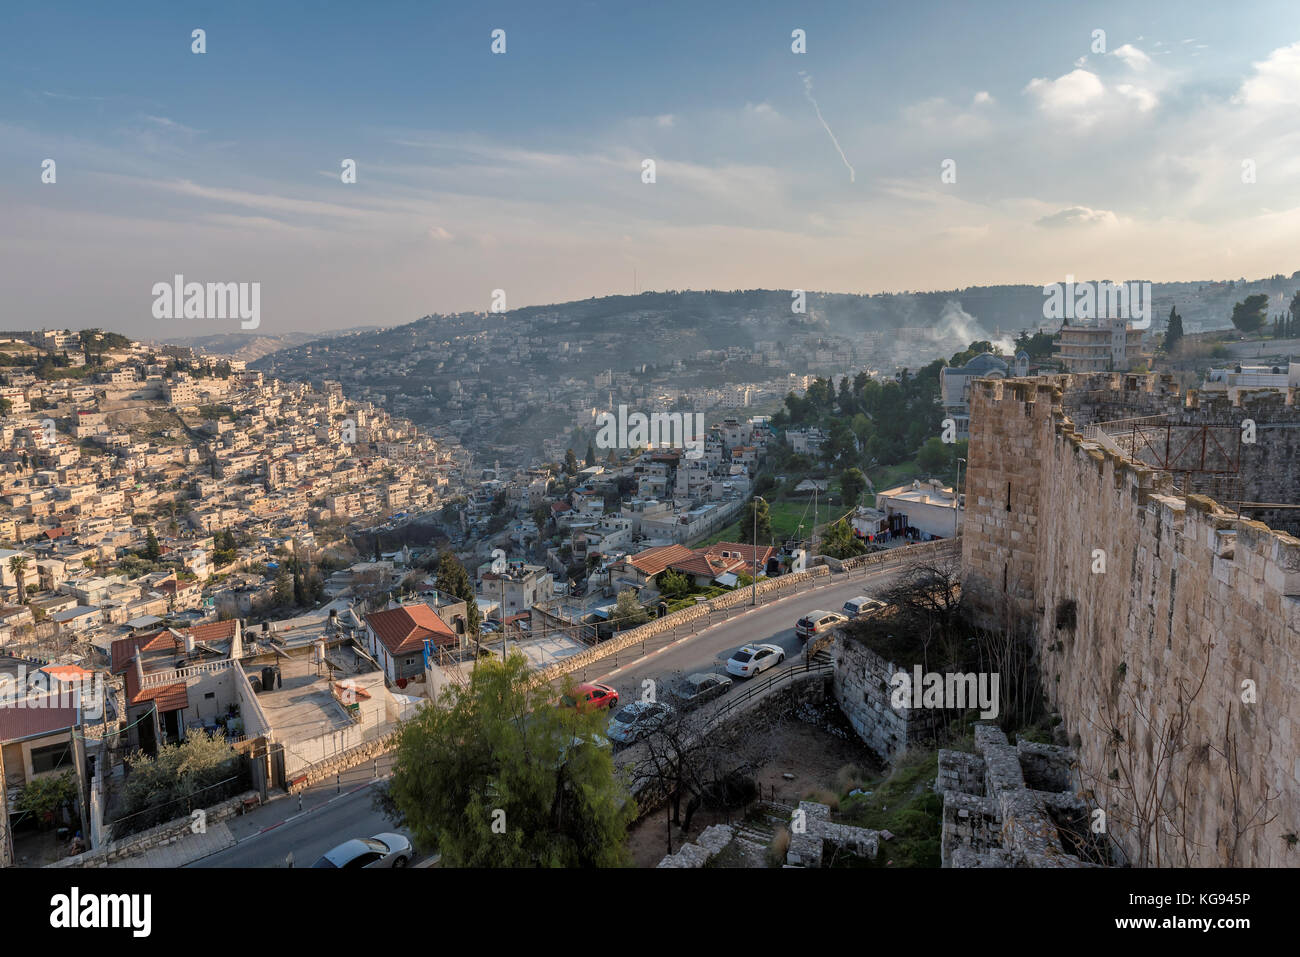 Ciudad vieja de Jerusalén, Israel. Foto de stock